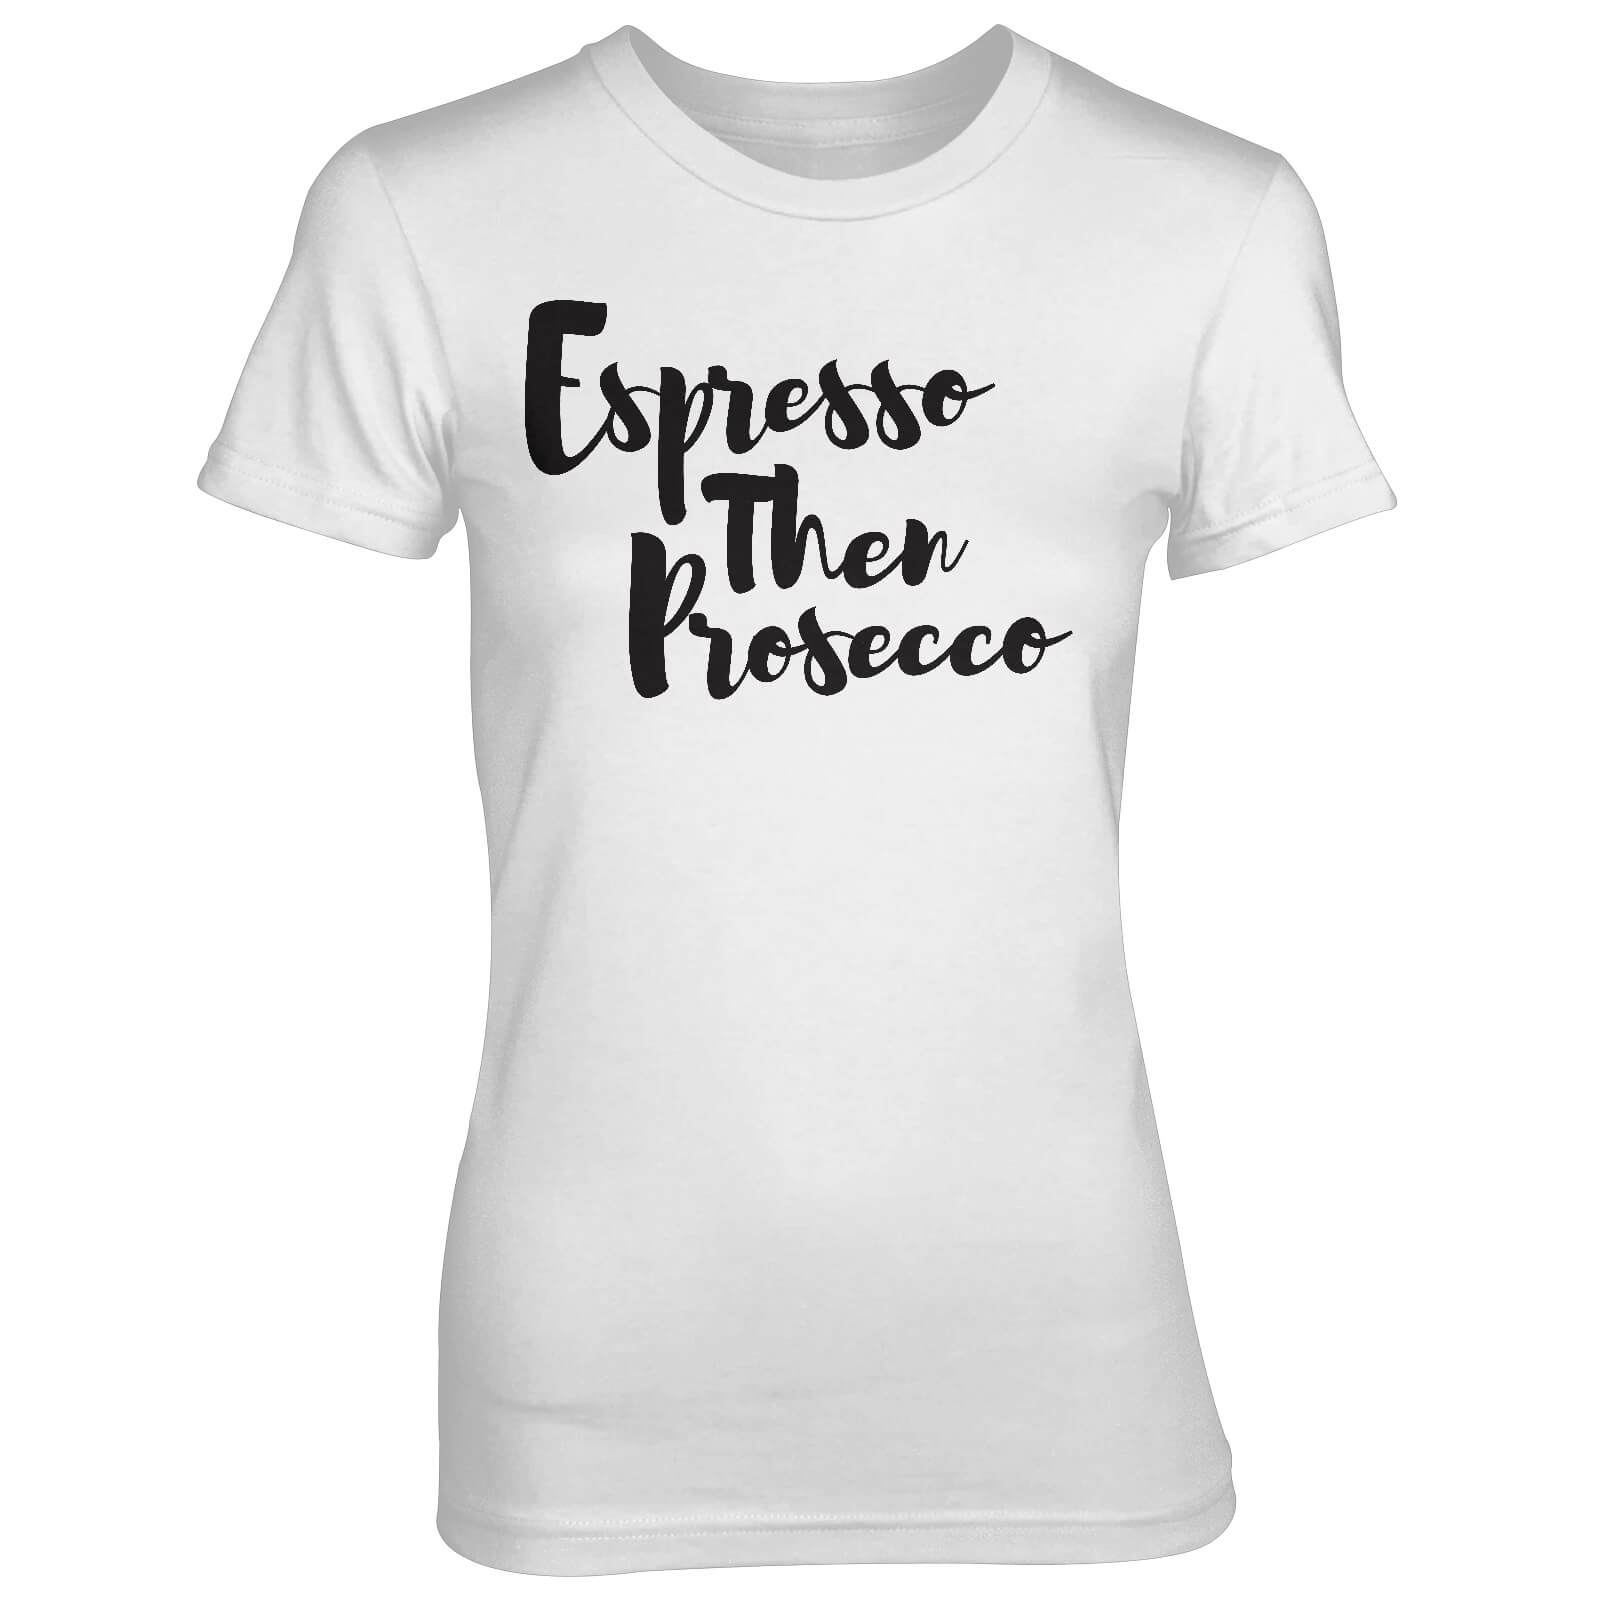 Espresso Then Prosecco Women's White T-Shirt - S - White